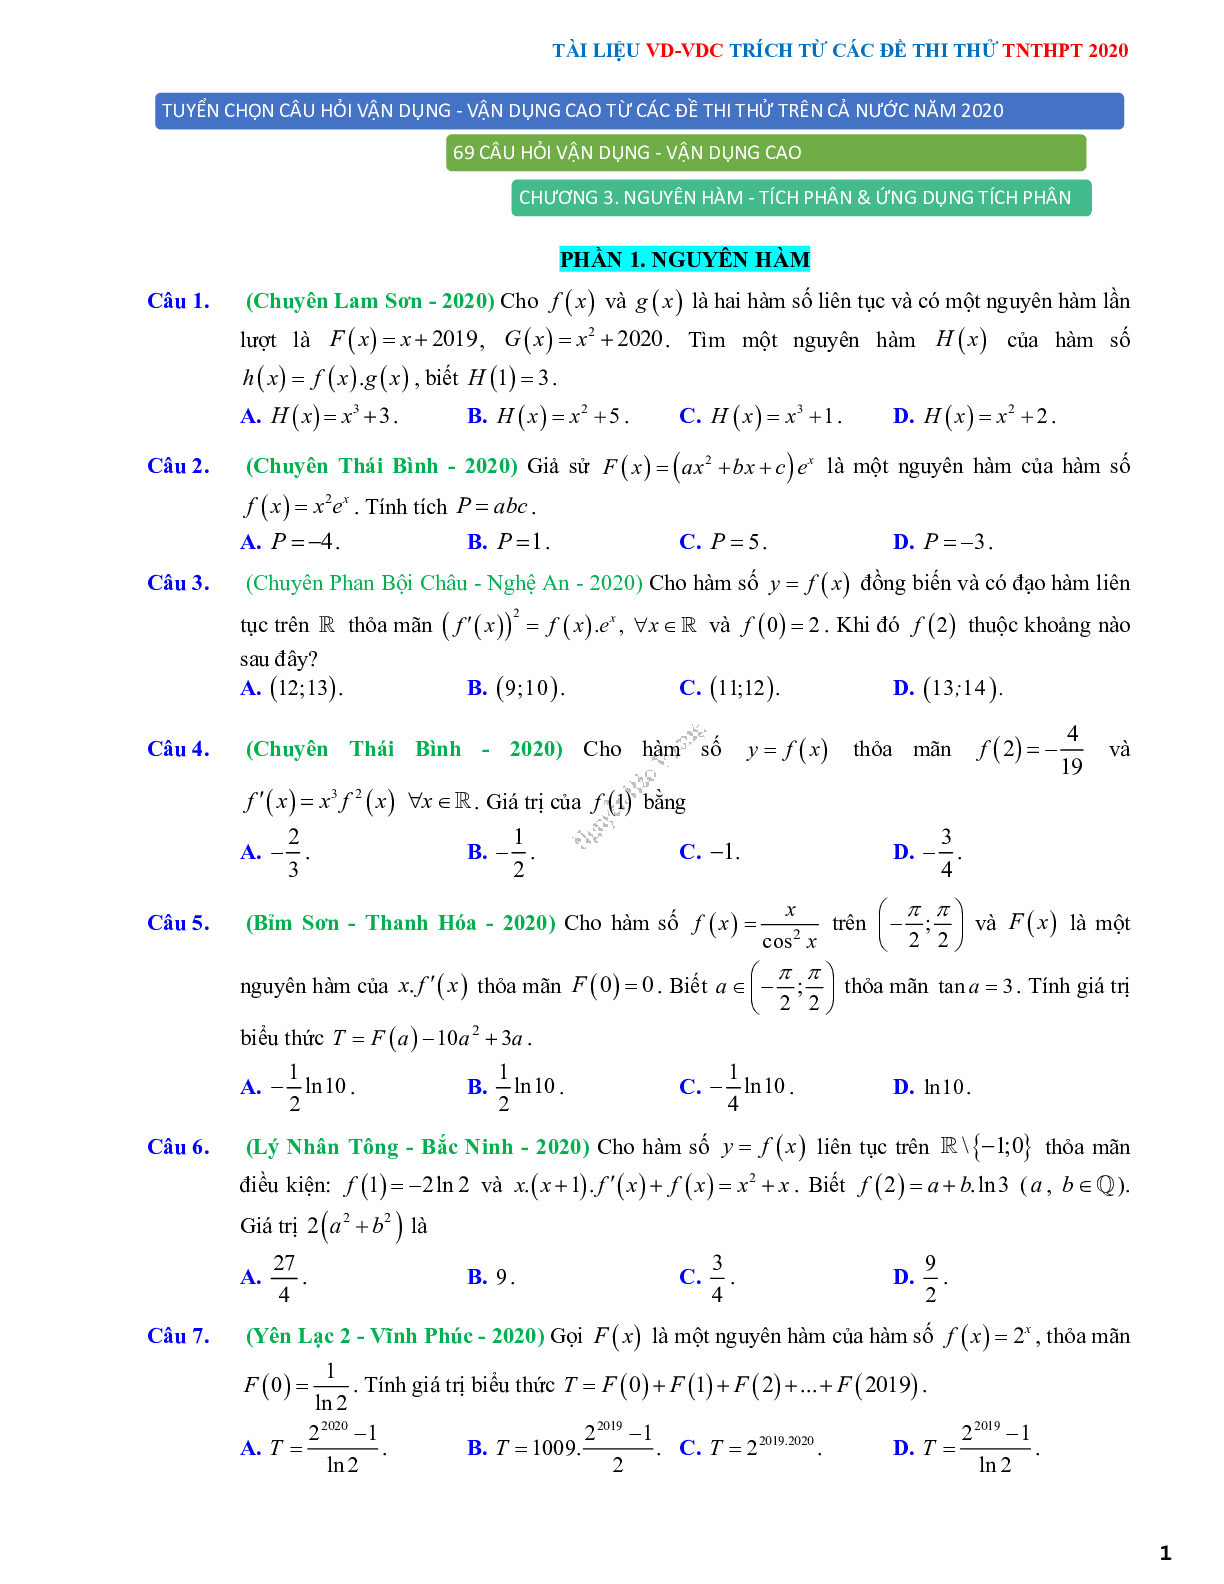 68 Bài tập vận dụng nguyên hàm tích phân và ứng dụng - có đáp án và lời giải (trang 1)